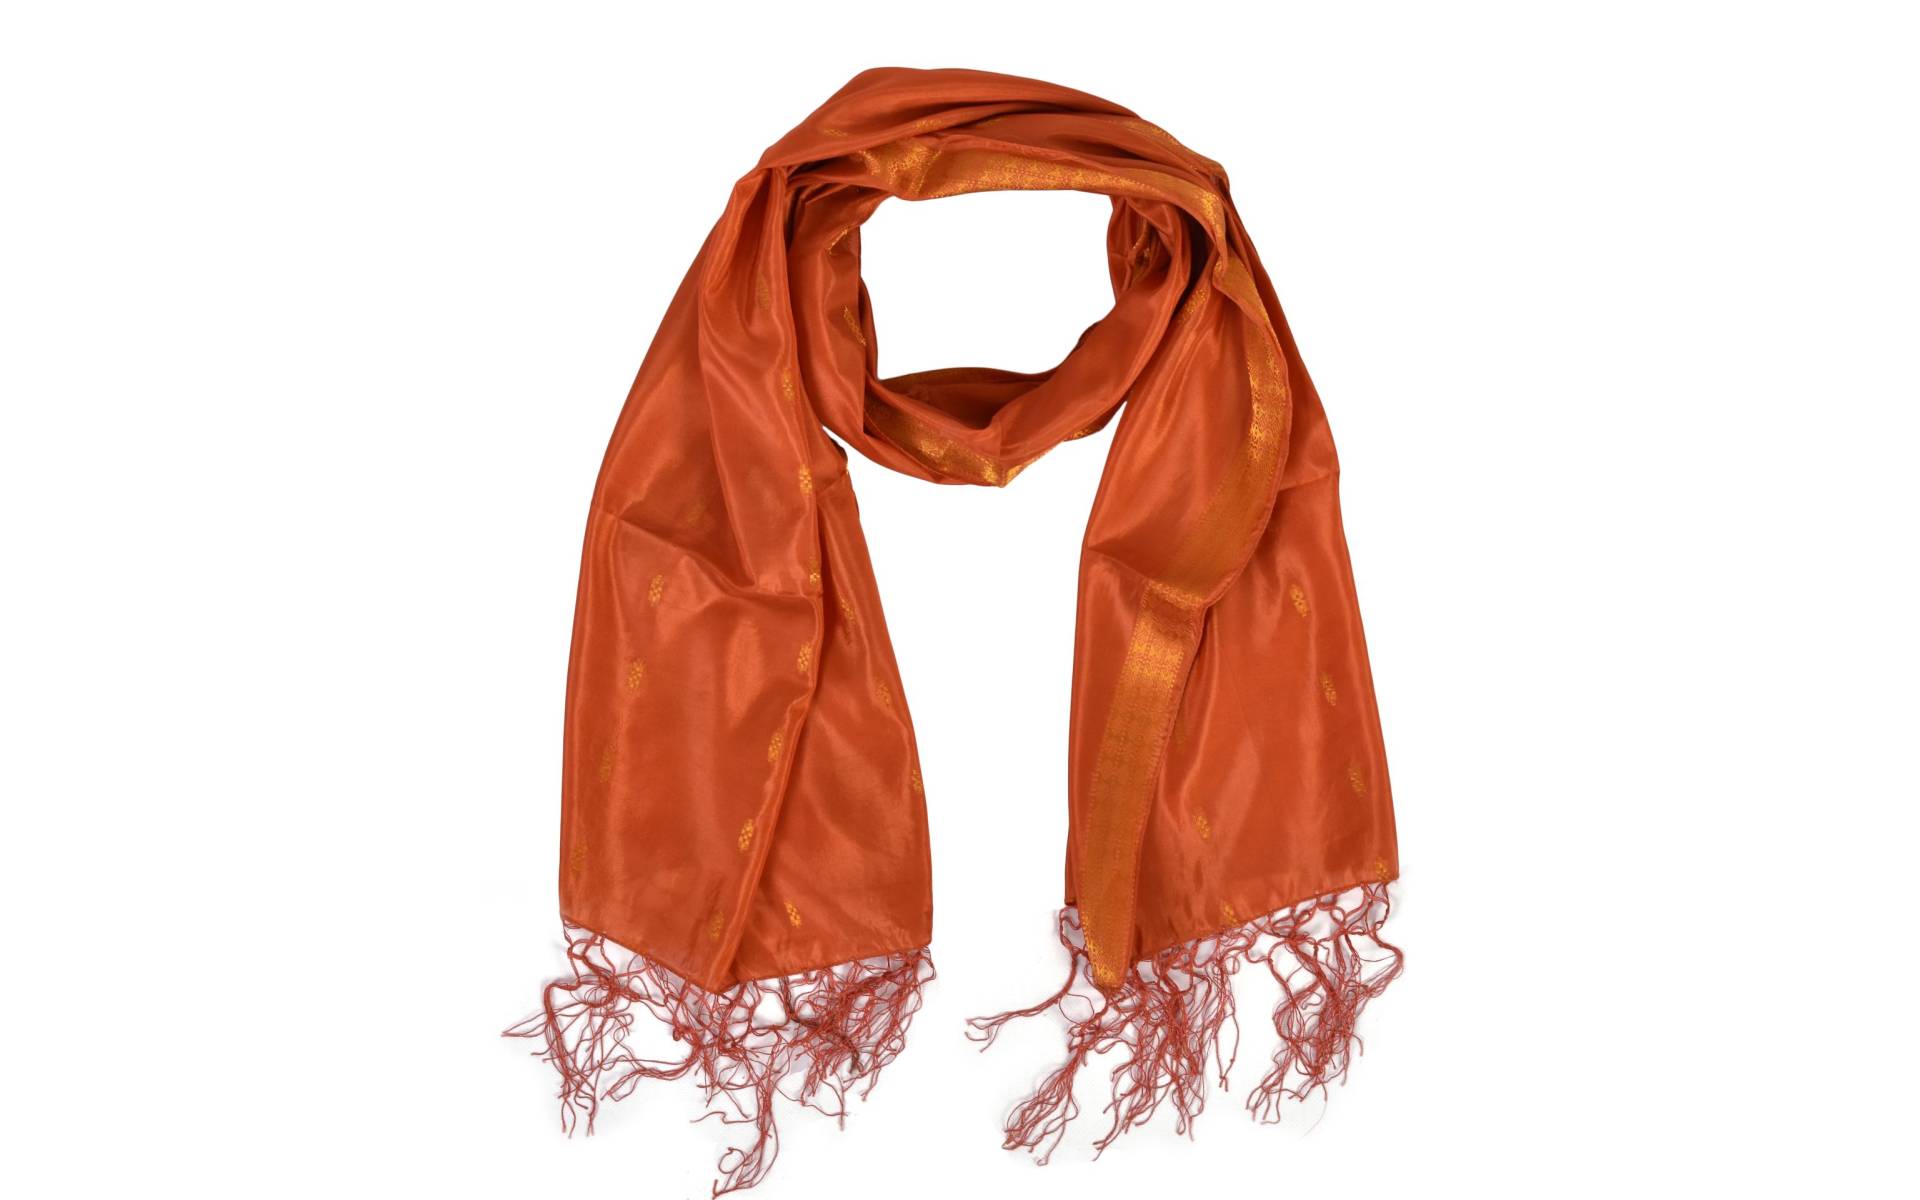 Šatka - polyester, sárí, tm. oranžový, 186x53cm